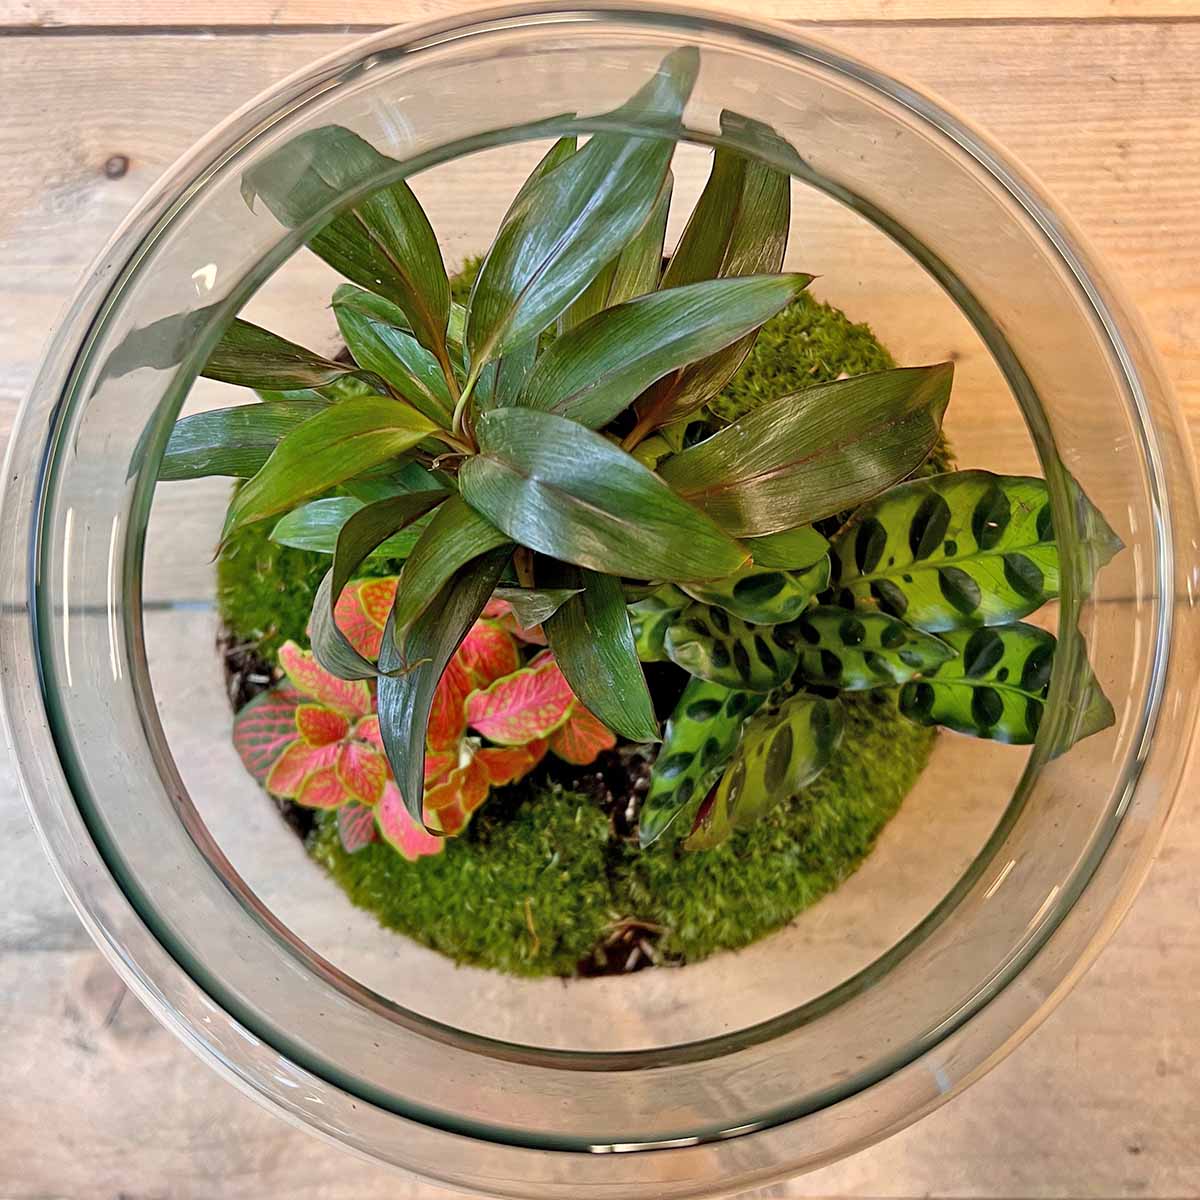 Kit DIY Terrarium • Bonsaï Drop XL Ficus Ginseng • Écosystème avec